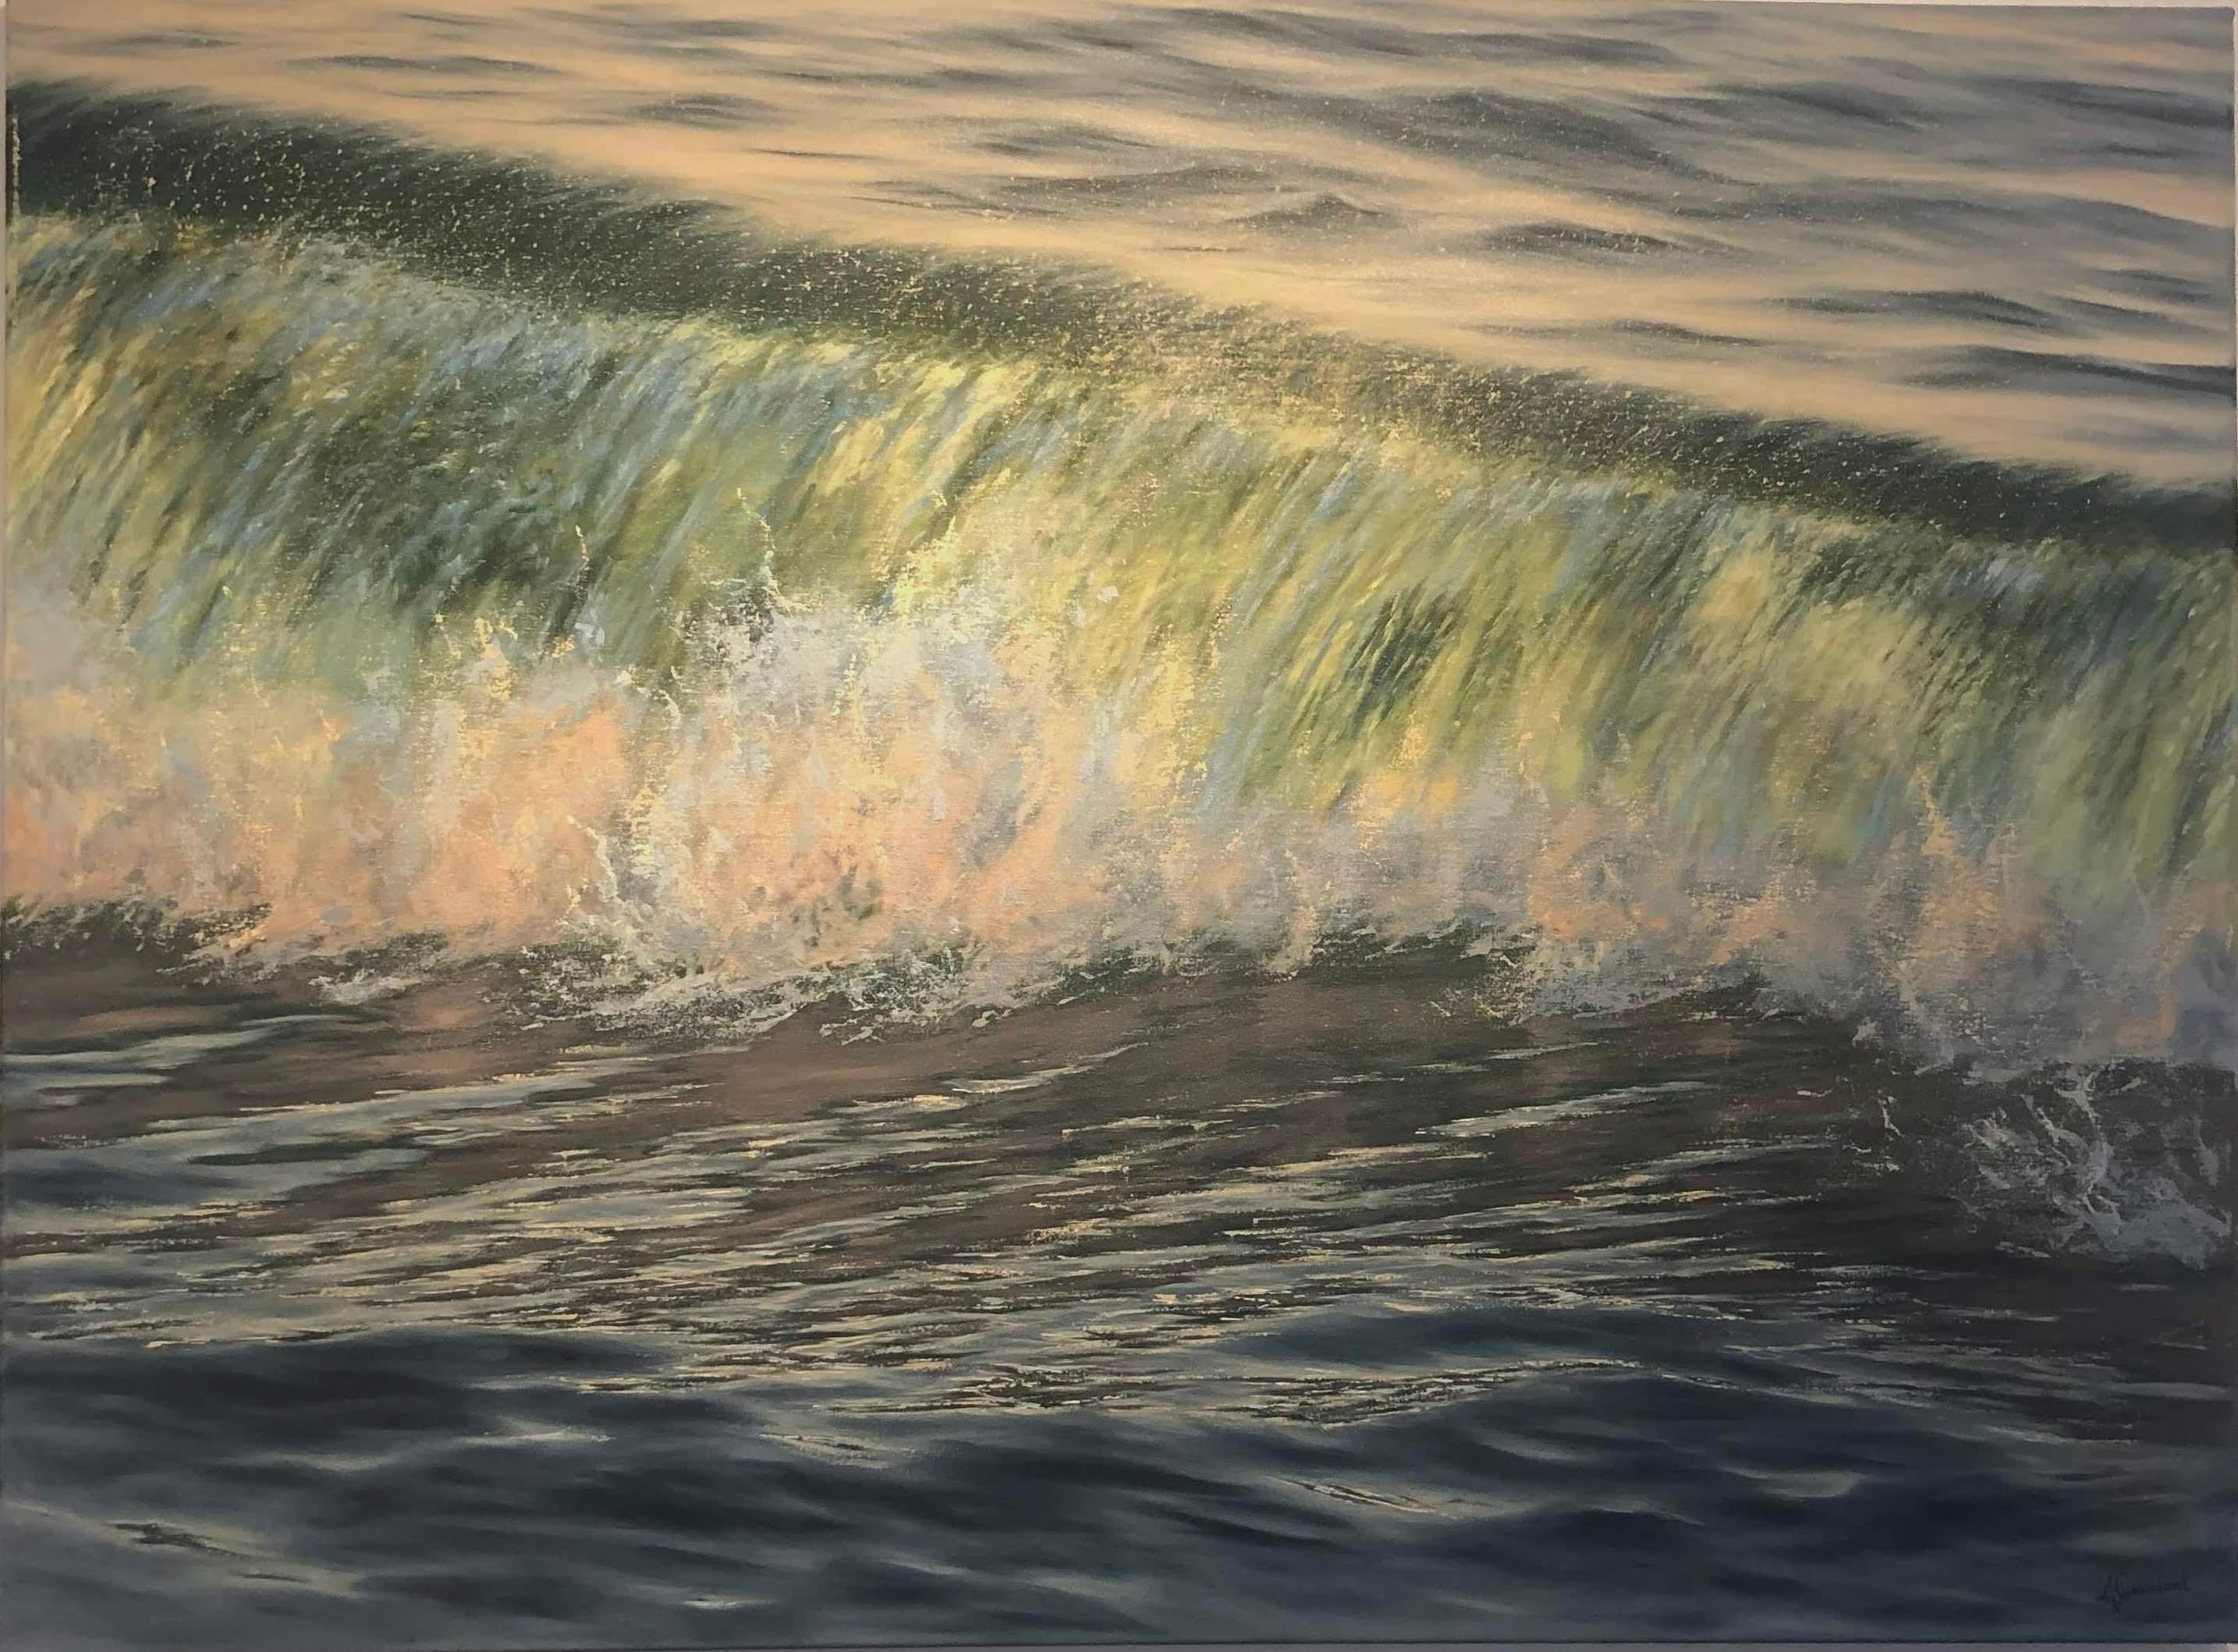 Crash Light - Art contemporain, peinture à l'huile réaliste de paysage marin et de vagues. - Painting de Irina Cumberland